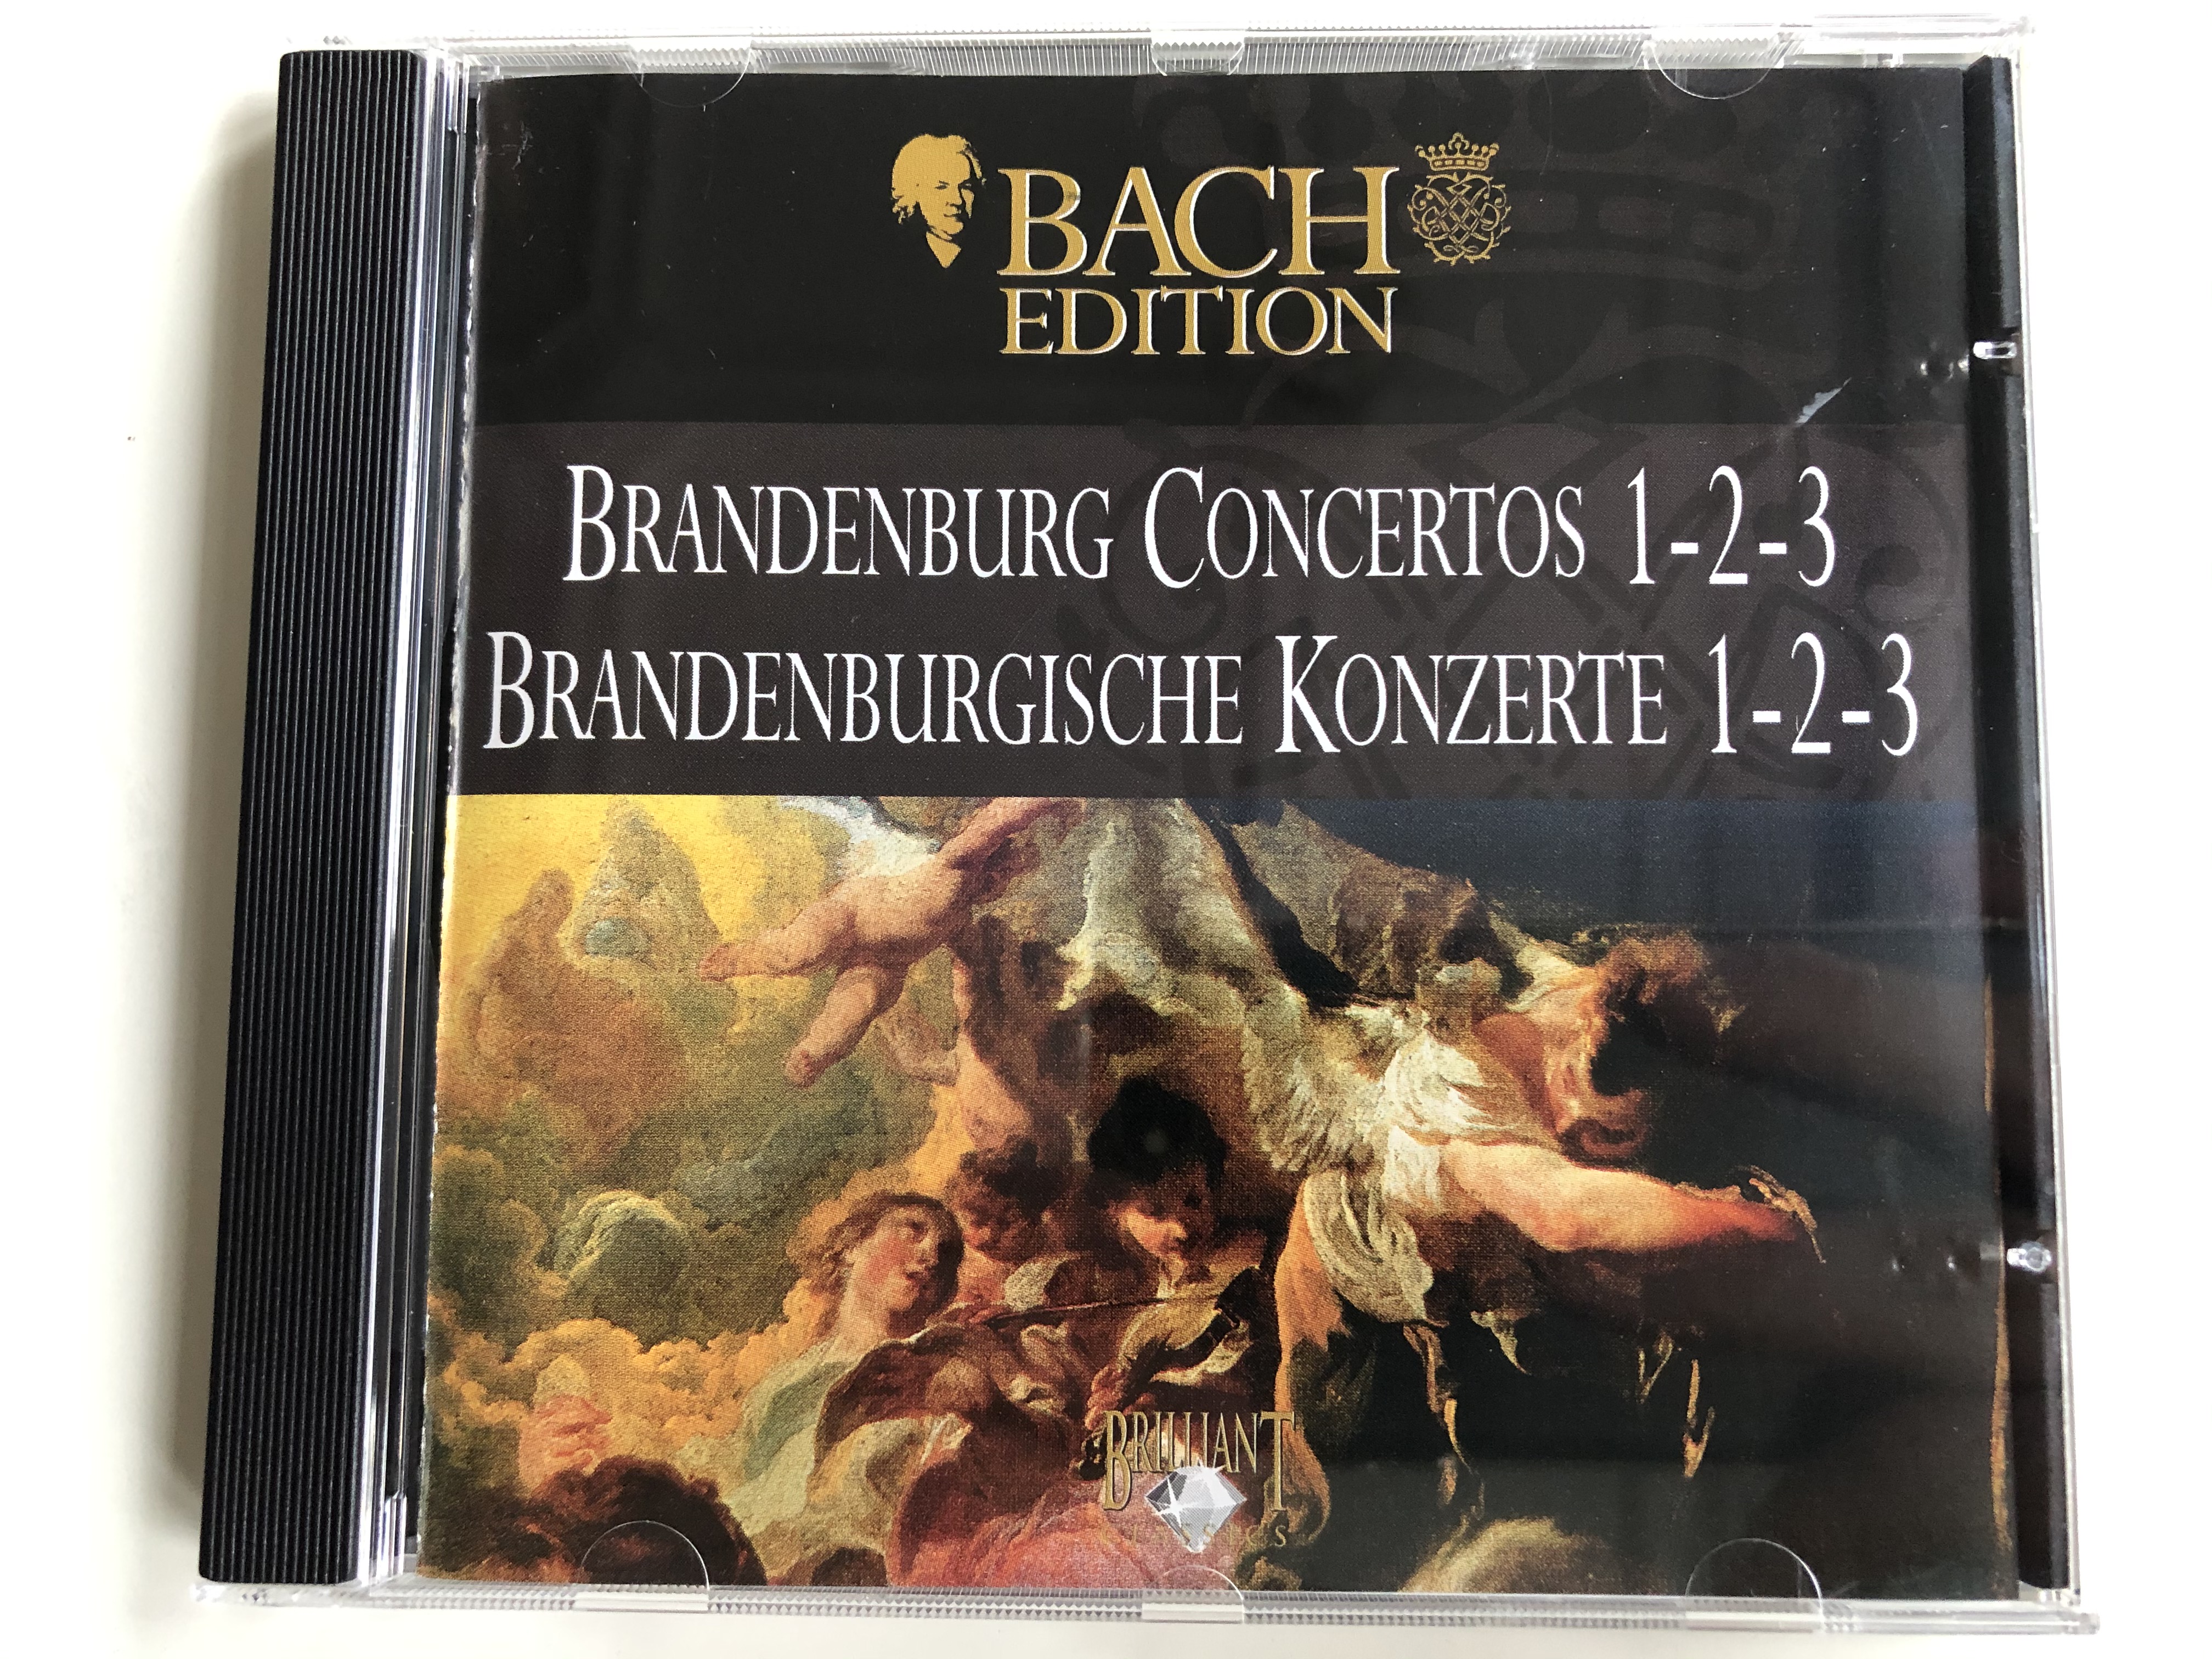 bach-edition-brandenburg-concertos-1-2-3-brandenburgische-konzerte-1-2-3-brilliant-classics-audio-cd-993601-1-.jpg